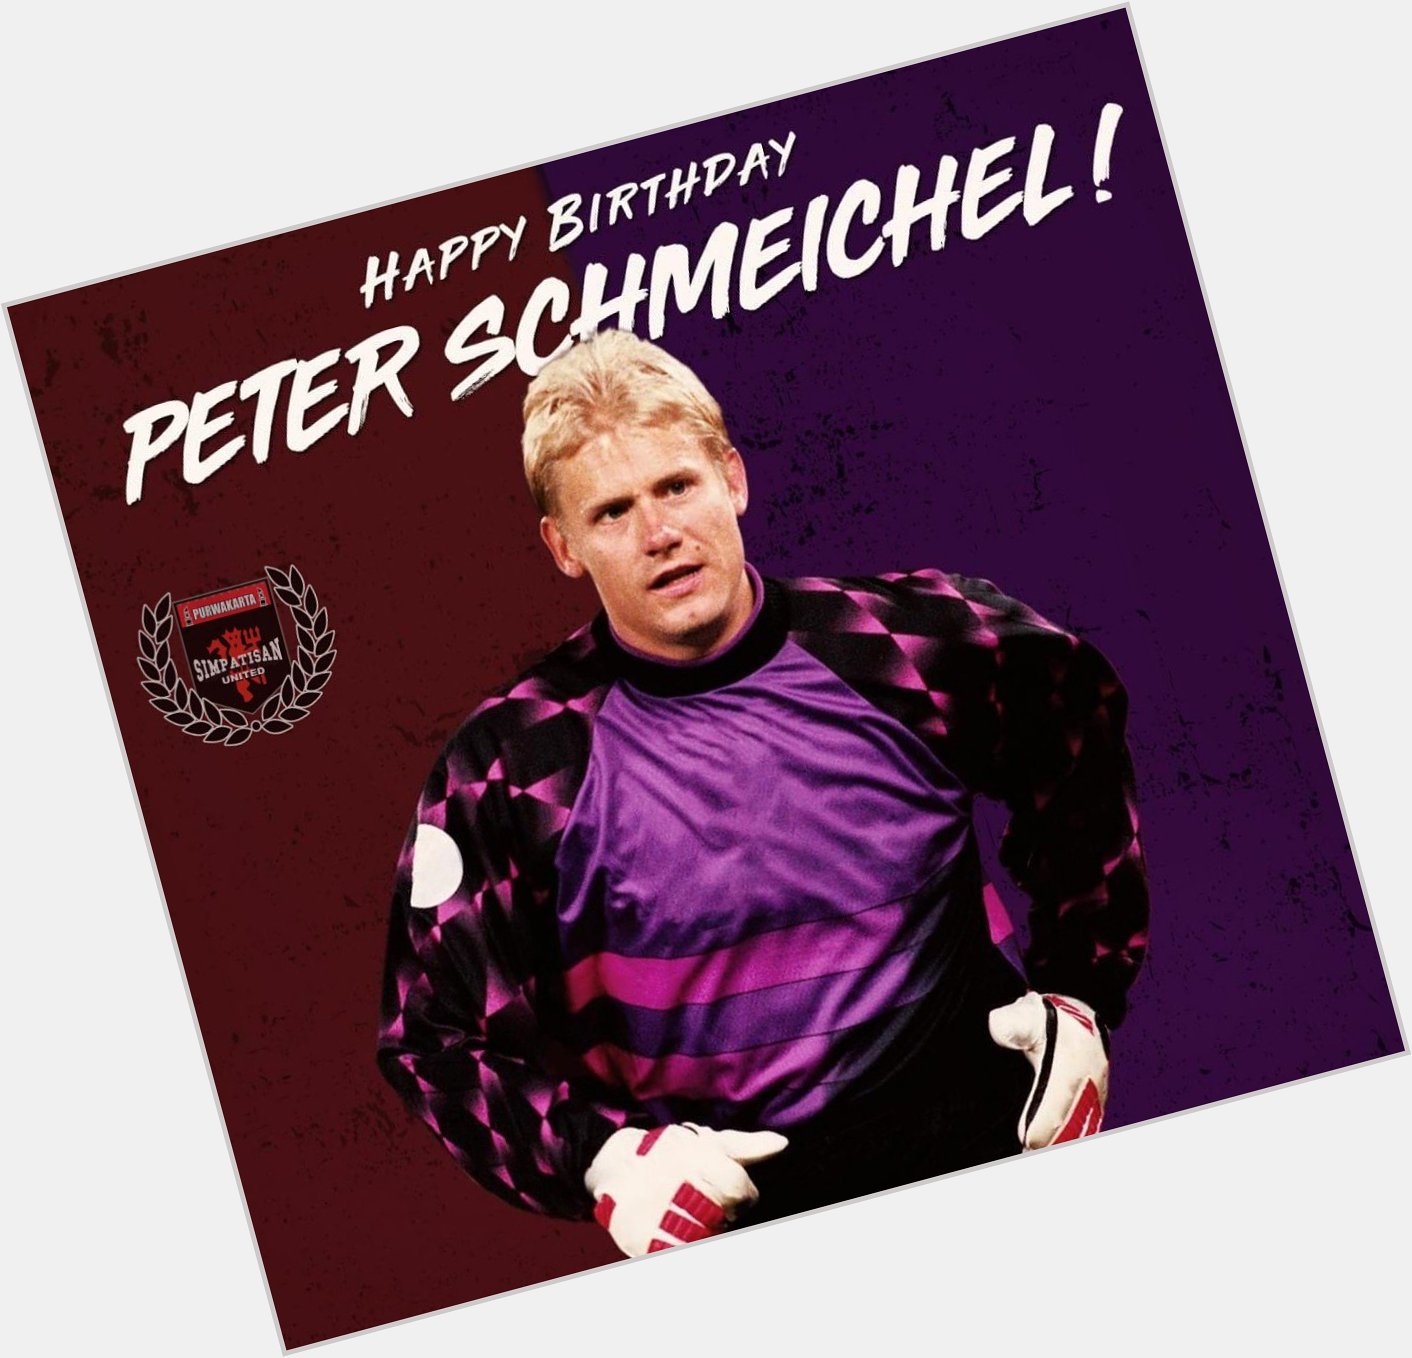 Happy birthday Peter Schmeichel    